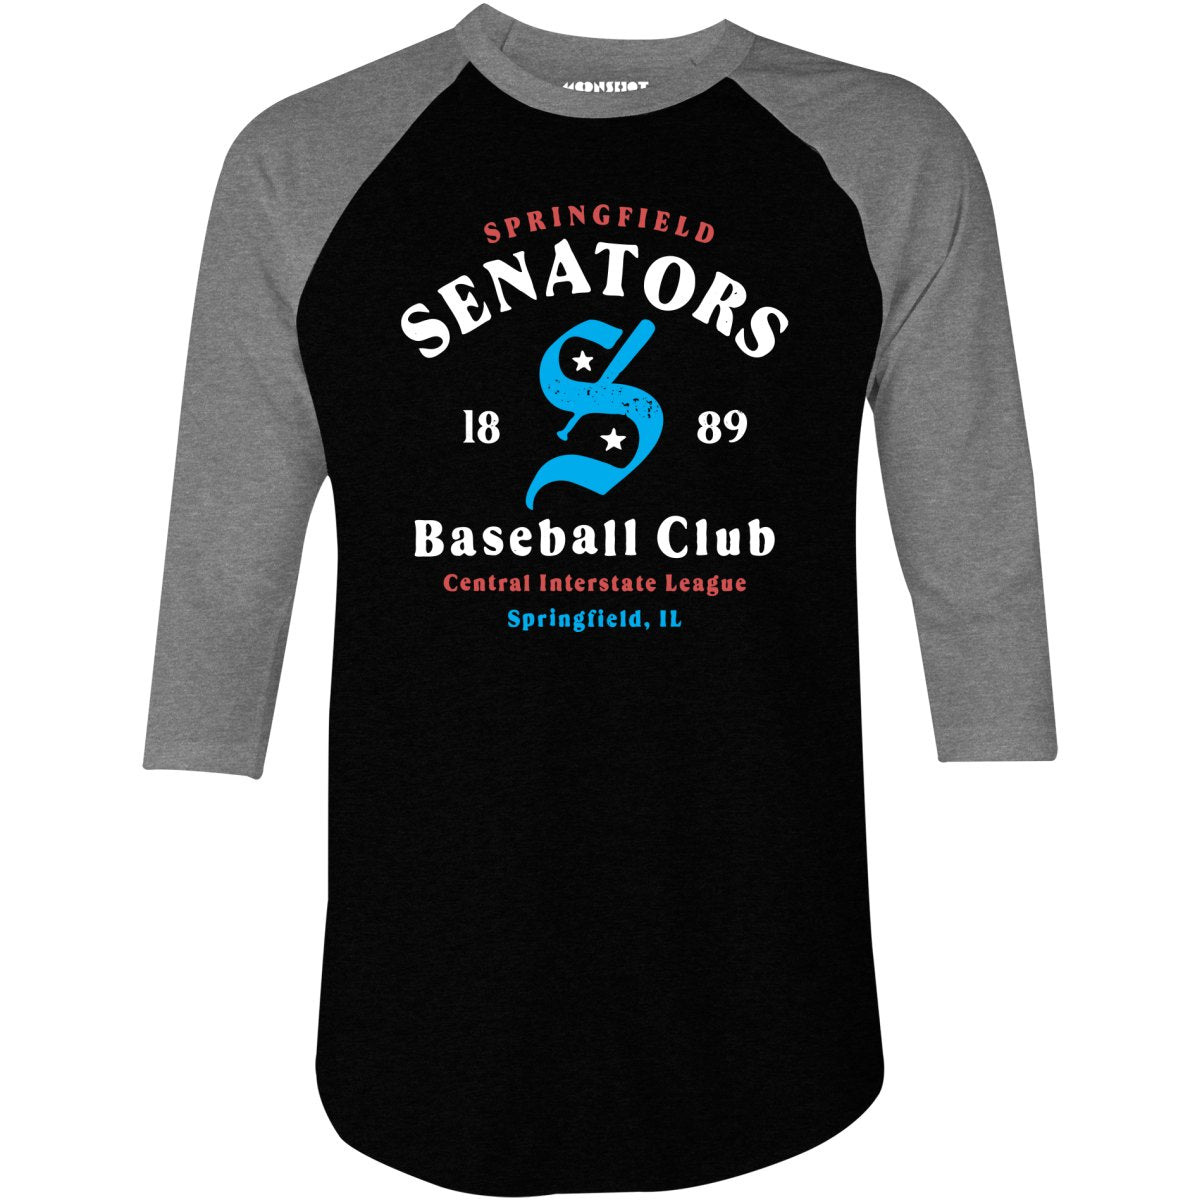 Springfield Senators - Illinois - Vintage Defunct Baseball Teams - 3/4 Sleeve Raglan T-Shirt